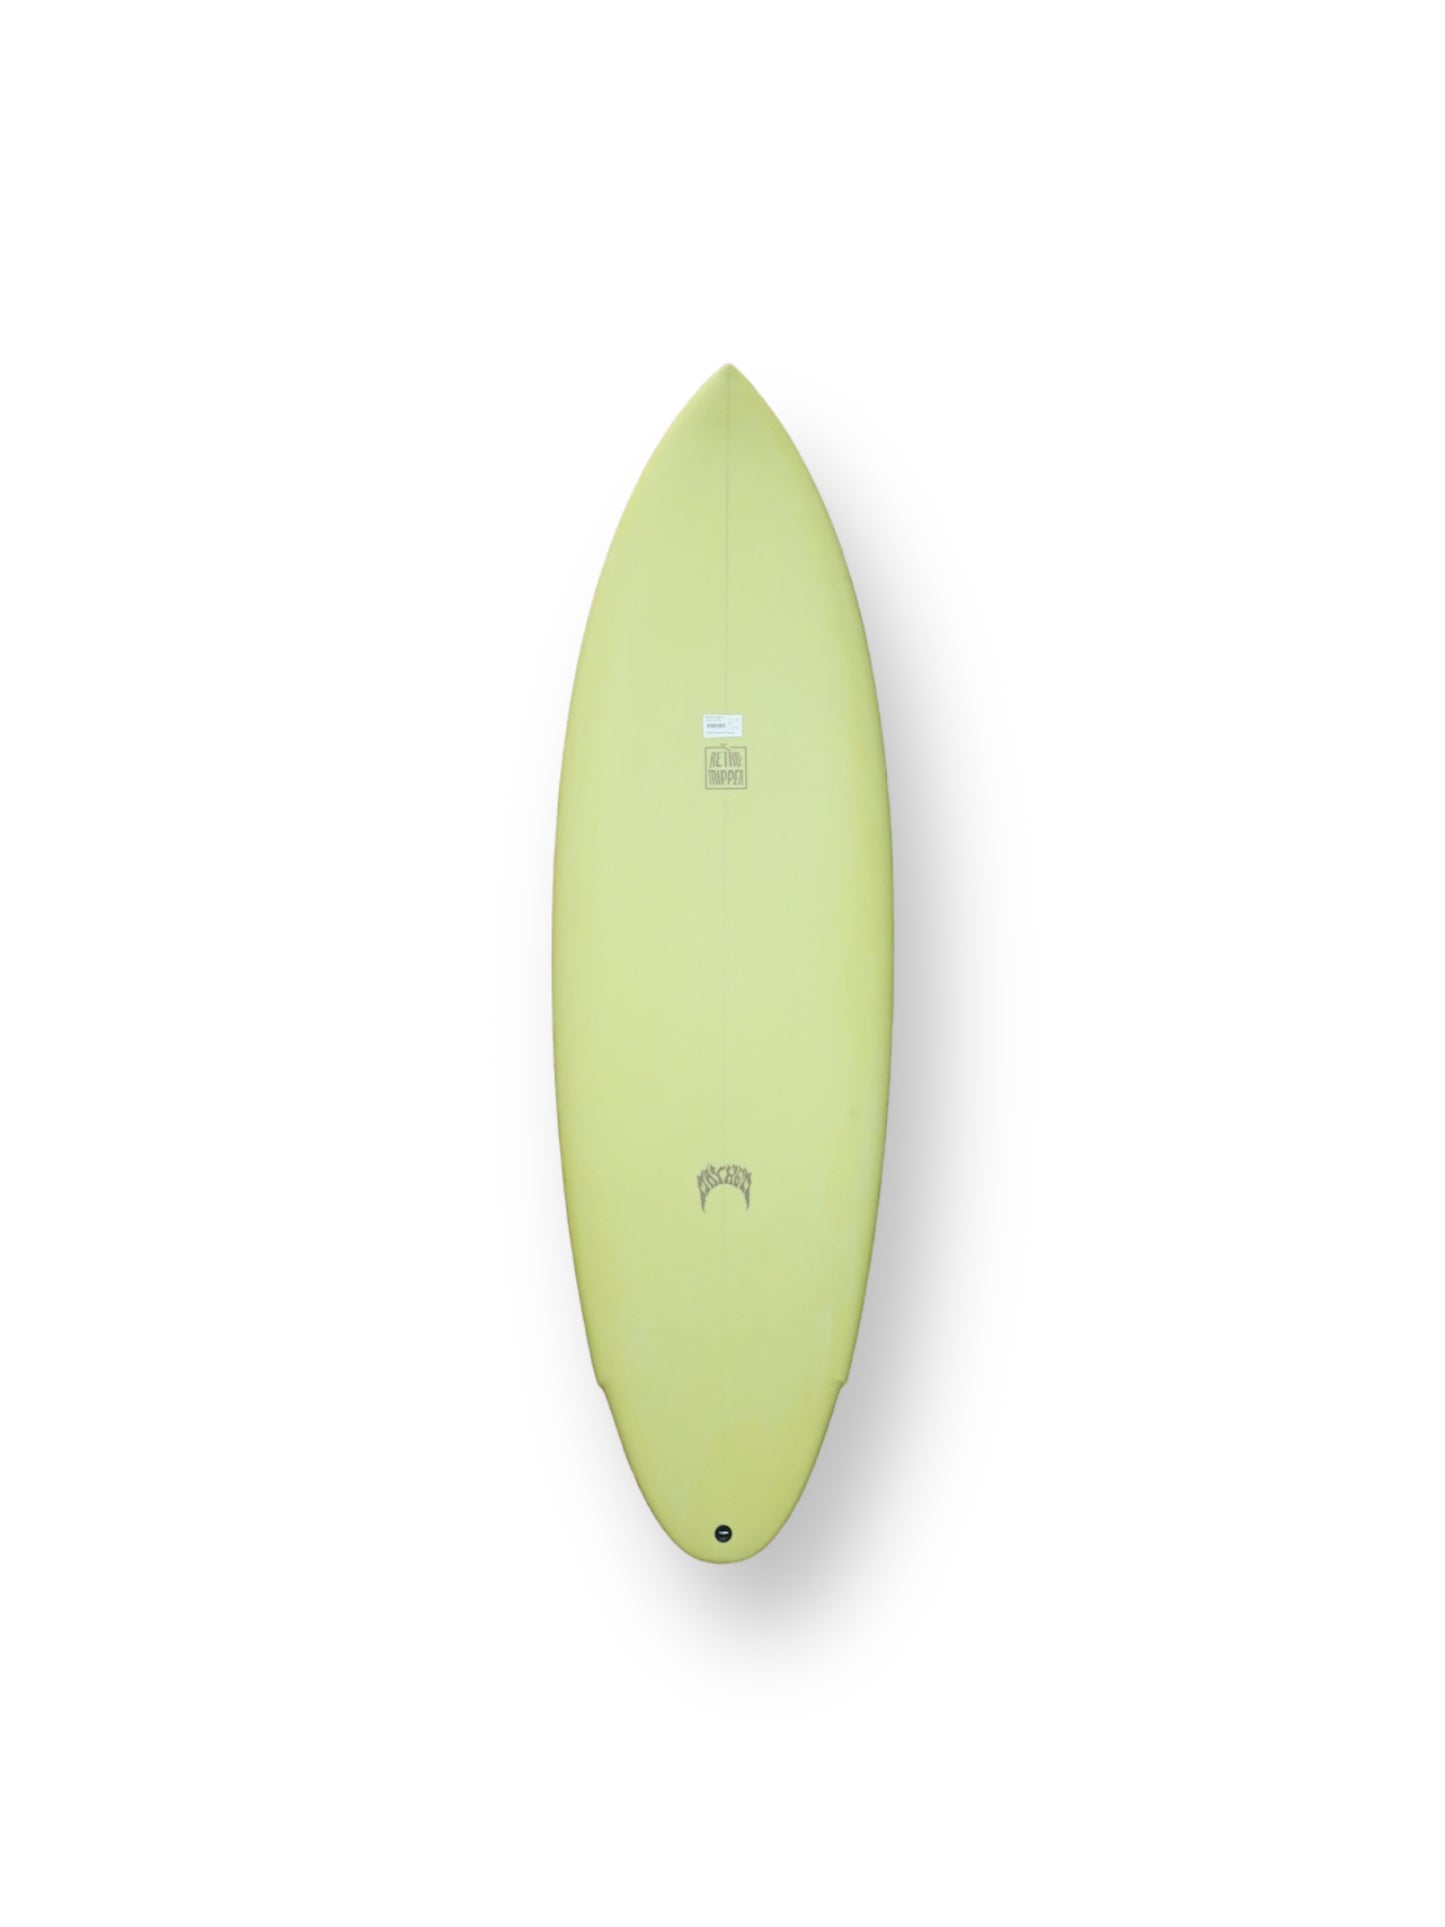 LOST MAYHEM RETRO RIPPER 5'9" SURFBOARD